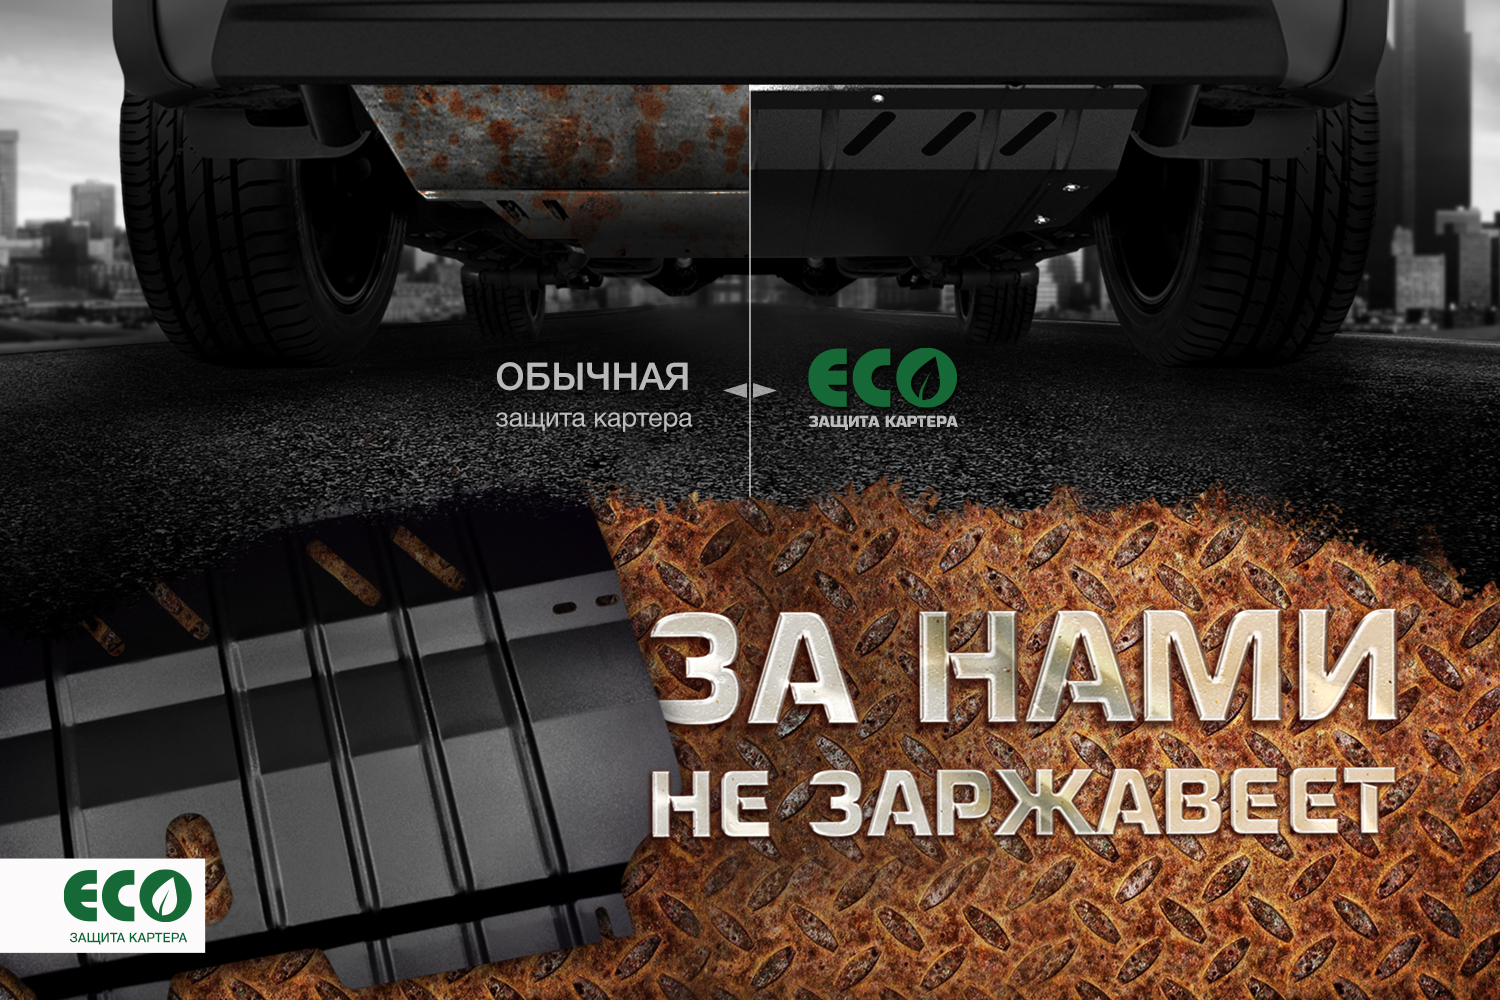 Комплект защиты радиатора и крепежа eco, подходит для haval H9 (15-18, 18->) 2,0 бензин/2,0 дизель мкпп/акпп   Хавал Н9 - Autofamily ECO.99.03.320